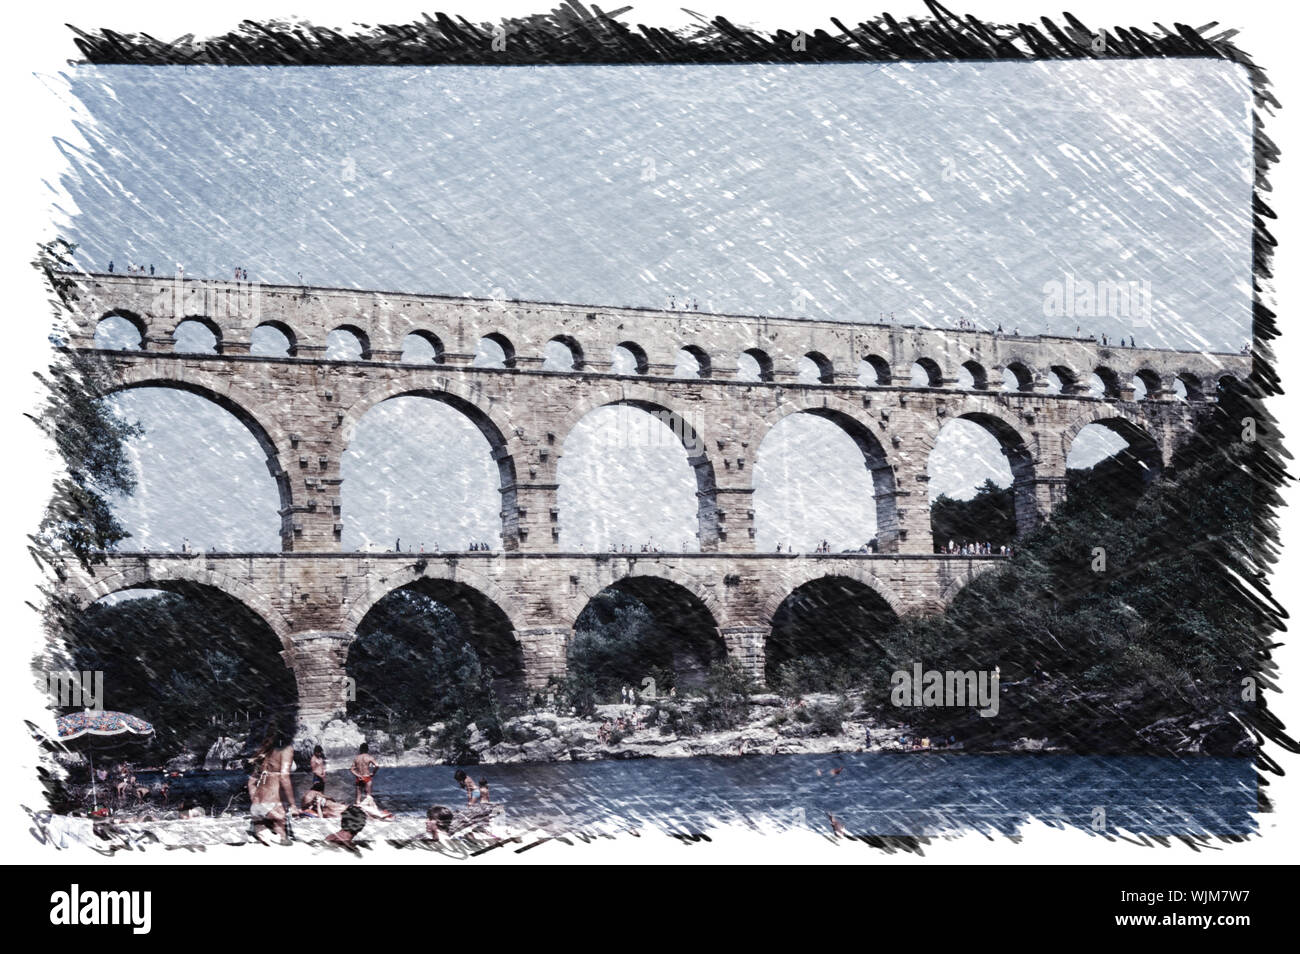 Impression de charbon le Pont du Gard, un aqueduc Romain ancien pont construit dans le siècle pour transporter l'eau dans le sud de la France. Banque D'Images